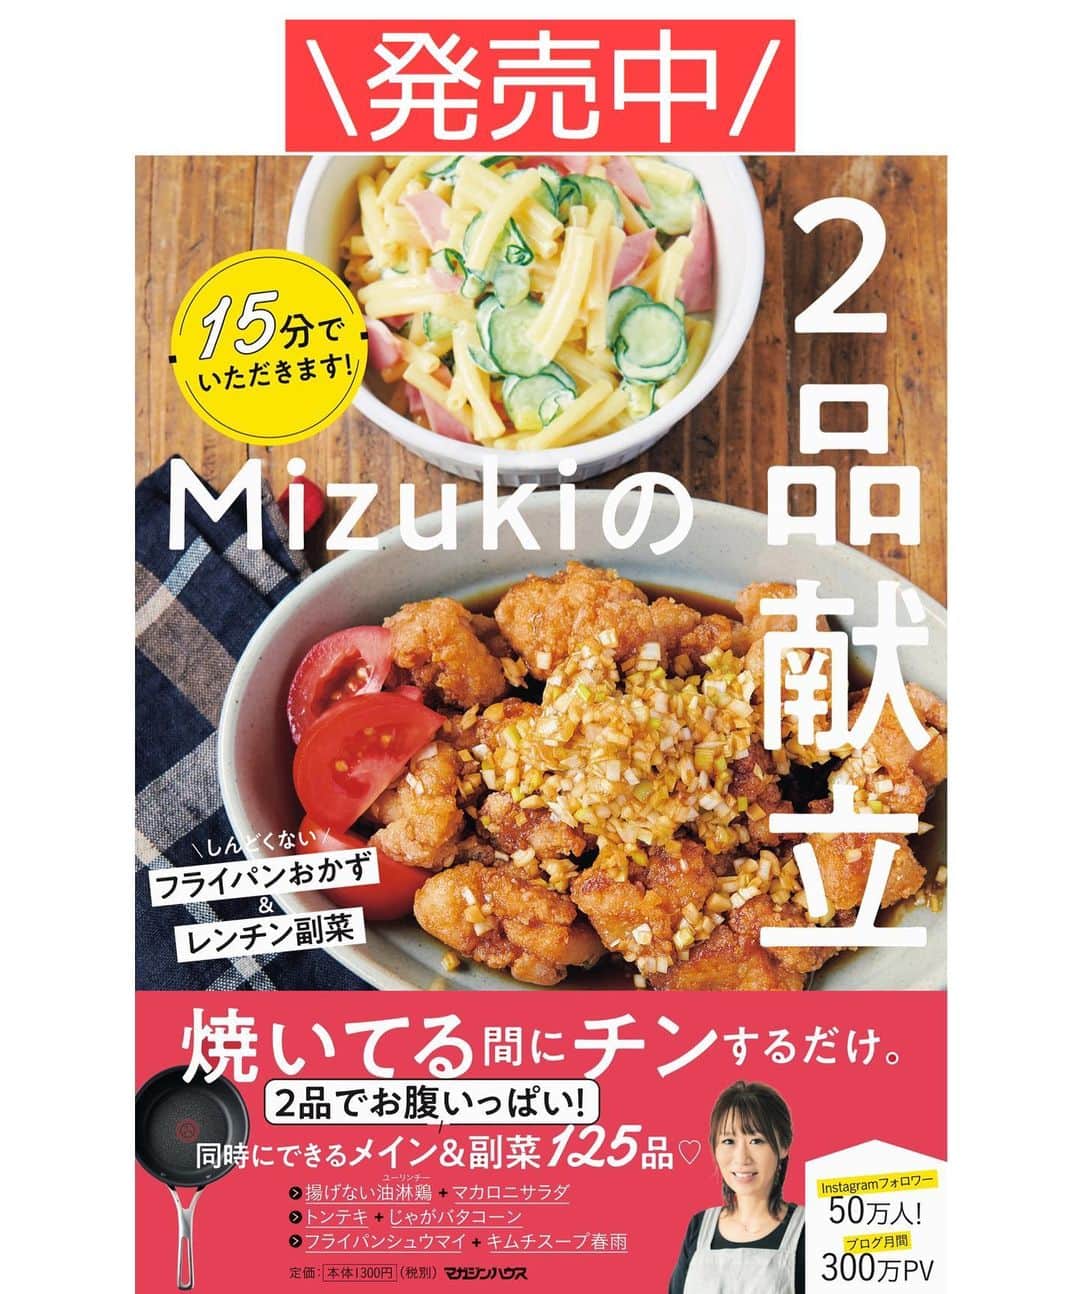 Mizuki【料理ブロガー・簡単レシピ】さんのインスタグラム写真 - (Mizuki【料理ブロガー・簡単レシピ】Instagram)「・﻿ 【#レシピ 】ーーーーーーーーーー﻿ ♡衣ザクザク♡フライドチキン♡﻿ ーーーーーーーーーーーーーーーー﻿ ﻿ ﻿ ﻿ おはようございます(*^^*)﻿ ﻿ 今日はクリスマスにもおすすめの﻿ \フライドチキン/のご紹介です♩﻿ ﻿ フライドチキンといえば﻿ 沢山のスパイスが必要•••﻿ だけどうちにはないので😂﻿ あるものだけで作りましたよ〜♩﻿ 漬け込みなしですぐできて﻿ 衣はザックザクに仕上がります♡﻿ ﻿ 今回は手羽元を使用しましたが﻿ もも肉やむね肉で作ってもOK！﻿ クリスマスメニューにぴったりなので﻿ よかったらお試し下さいね(*^^*)﻿ ﻿ ﻿ ﻿ ＿＿＿＿＿＿＿＿＿＿＿＿＿＿＿＿＿＿＿＿﻿ 【作りやすい量】﻿ 手羽元...8〜10本﻿ ●卵...1個﻿ ●薄力粉...大6﻿ ●醤油・みりん...各大1.5﻿ ●塩...小1/2﻿ ●カレー粉...小1/8﻿ 片栗粉・サラダ油...各適量﻿ ﻿ 1.手羽元は骨に沿って2本(深く)切り込みを入れる。﻿ 2.ボウルに●を入れてよく混ぜ、1を加えてからめ、1本ずつしっかり片栗粉をまぶす。﻿ 3.フライパンに2cmの油を入れて中火で熱し、2を入れ、返しながら8〜10分程揚げ焼きにする。﻿ ￣￣￣￣￣￣￣￣￣￣￣￣￣￣￣￣￣￣￣￣﻿ ﻿ ﻿ ﻿ 《ポイント》﻿ ♦︎手羽元は深く切り込みを入れ、身を開くようにすると火が通りやすくなります♩﻿ ♦︎衣はたっぷりからめ、片栗粉はしっかりまぶして下さい♩﻿ ♦︎油の温度設定ができる場合は170度にして下さい♩﻿ ♦︎もも肉やむね肉の場合は揚げ時間を短めにして下さい♩﻿ ﻿ ﻿ ﻿ ﻿ ﻿ ﻿ ﻿ ﻿ ﻿ 📕新刊予約開始しました📕﻿ 【ラクしておいしい！#1品晩ごはん 】﻿ ￣￣￣￣￣￣￣￣￣￣￣￣￣￣￣￣￣﻿ 私たちだってヘトヘトな日がある•••﻿ 毎日何品も作っていられない•••﻿ もうごはんに悩みたくない😢﻿ そう思うことってありませんか？﻿ そんな時、1品ごはんはいかがでしょう？﻿ というご提案です✨﻿ ﻿ ﻿ 【1品ごはん】は﻿ 副菜いらずで全てがシンプル！﻿ ￣￣￣￣￣￣￣￣￣￣￣￣￣￣￣￣￣￣﻿ 一品つくるだけでいいから﻿ 献立を考えなくてよし！﻿ ￣￣￣￣￣￣￣￣￣￣￣￣￣￣￣￣￣￣﻿ 悩まない、疲れない、﻿ 気力や時間がなくてもなんとかなる！﻿ ￣￣￣￣￣￣￣￣￣￣￣￣￣￣￣￣￣￣﻿ そんな頼りになる﻿ 便利なお助けごはんです☺️💕﻿ (ハイライトに🔗貼っています✨)﻿ ￣￣￣￣￣￣￣￣￣￣￣￣￣￣￣￣￣﻿ ﻿ ﻿ ﻿ ﻿ ﻿ ⭐️発売中⭐️﻿ ＿＿＿＿＿＿＿＿＿＿＿＿＿＿＿＿＿＿﻿ しんどくない献立、考えました♩﻿ \15分でいただきます/﻿ 📕#Mizukiの2品献立 📕﻿ ﻿ 和食をもっとカジュアルに♩﻿ \毎日のごはんがラクになる/﻿ 📘#Mizukiの今どき和食 📘﻿ ﻿ ホケミレシピの決定版♩﻿ \はじめてでも失敗しない/﻿ 📙#ホットケーキミックスのお菓子 📙﻿ ﻿ NHKまる得マガジンテキスト☆﻿ ホットケーキミックスで﻿ 📗絶品おやつ&意外なランチ📗﻿ ￣￣￣￣￣￣￣￣￣￣￣￣￣￣￣￣￣￣﻿ ﻿ ﻿ ﻿ ＿＿＿＿＿＿＿＿＿＿＿＿＿＿＿＿＿＿﻿ レシピを作って下さった際や﻿ レシピ本についてのご投稿には﻿ タグ付け( @mizuki_31cafe )して﻿ お知らせいただけると嬉しいです😊💕﻿ ￣￣￣￣￣￣￣￣￣￣￣￣￣￣￣￣￣￣﻿ ﻿ ﻿ ﻿ ﻿ #フライドチキン#クリスマス#チキン#Mizuki#簡単レシピ#時短レシピ#節約レシピ#料理#フーディーテーブル#マカロニメイト#おうちごはん#デリスタグラマー#料理好きな人と繋がりたい#食べ物#料理記録#おうちごはんlover#写真好きな人と繋がりたい#foodpic#cooking#recipe#lin_stagrammer#foodporn#yummy#f52grams#フライドチキンm」12月14日 7時05分 - mizuki_31cafe